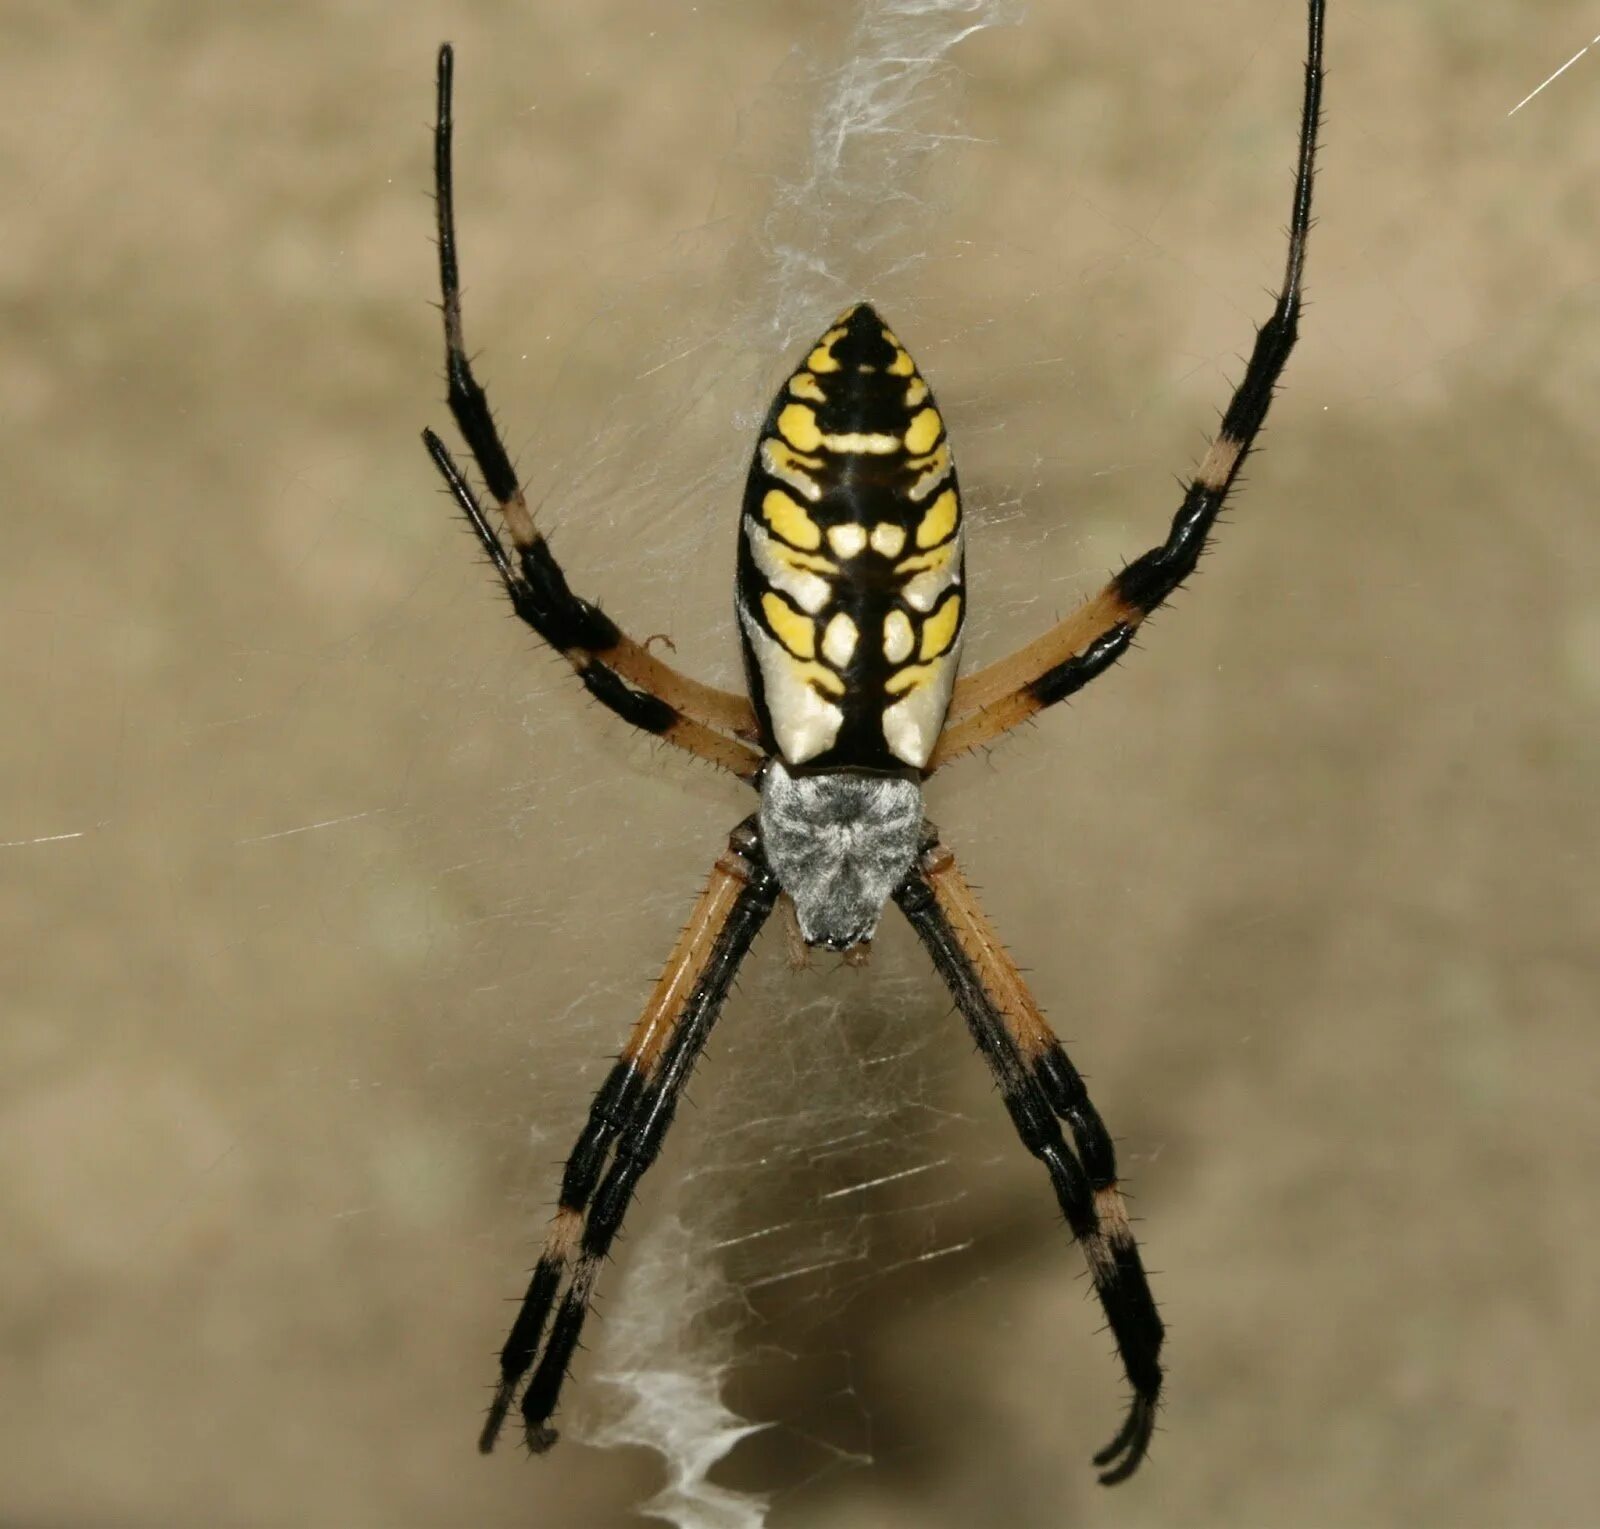 Паук кругопряд полосатый. Argiope aurantia паук. Паук полосатый жёлто-чёрный крестовик. Чёрный паук кругопряд.